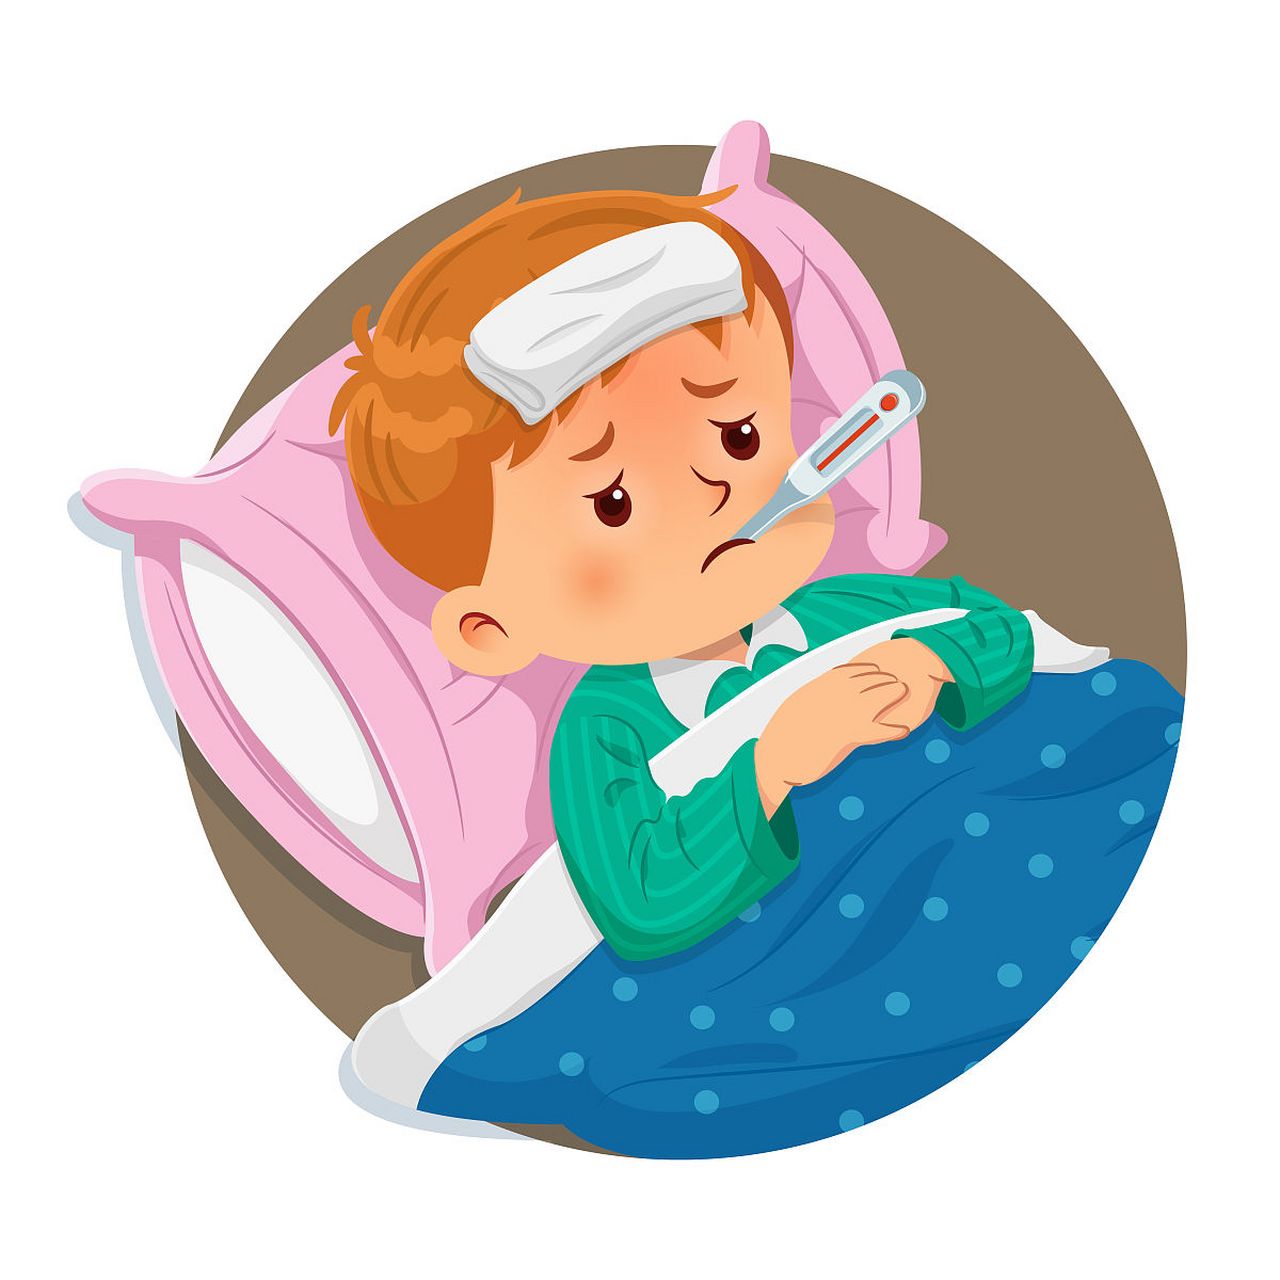 高热惊厥是婴幼儿时期由于体温急剧升高引发的短暂性癫痫发作,可能